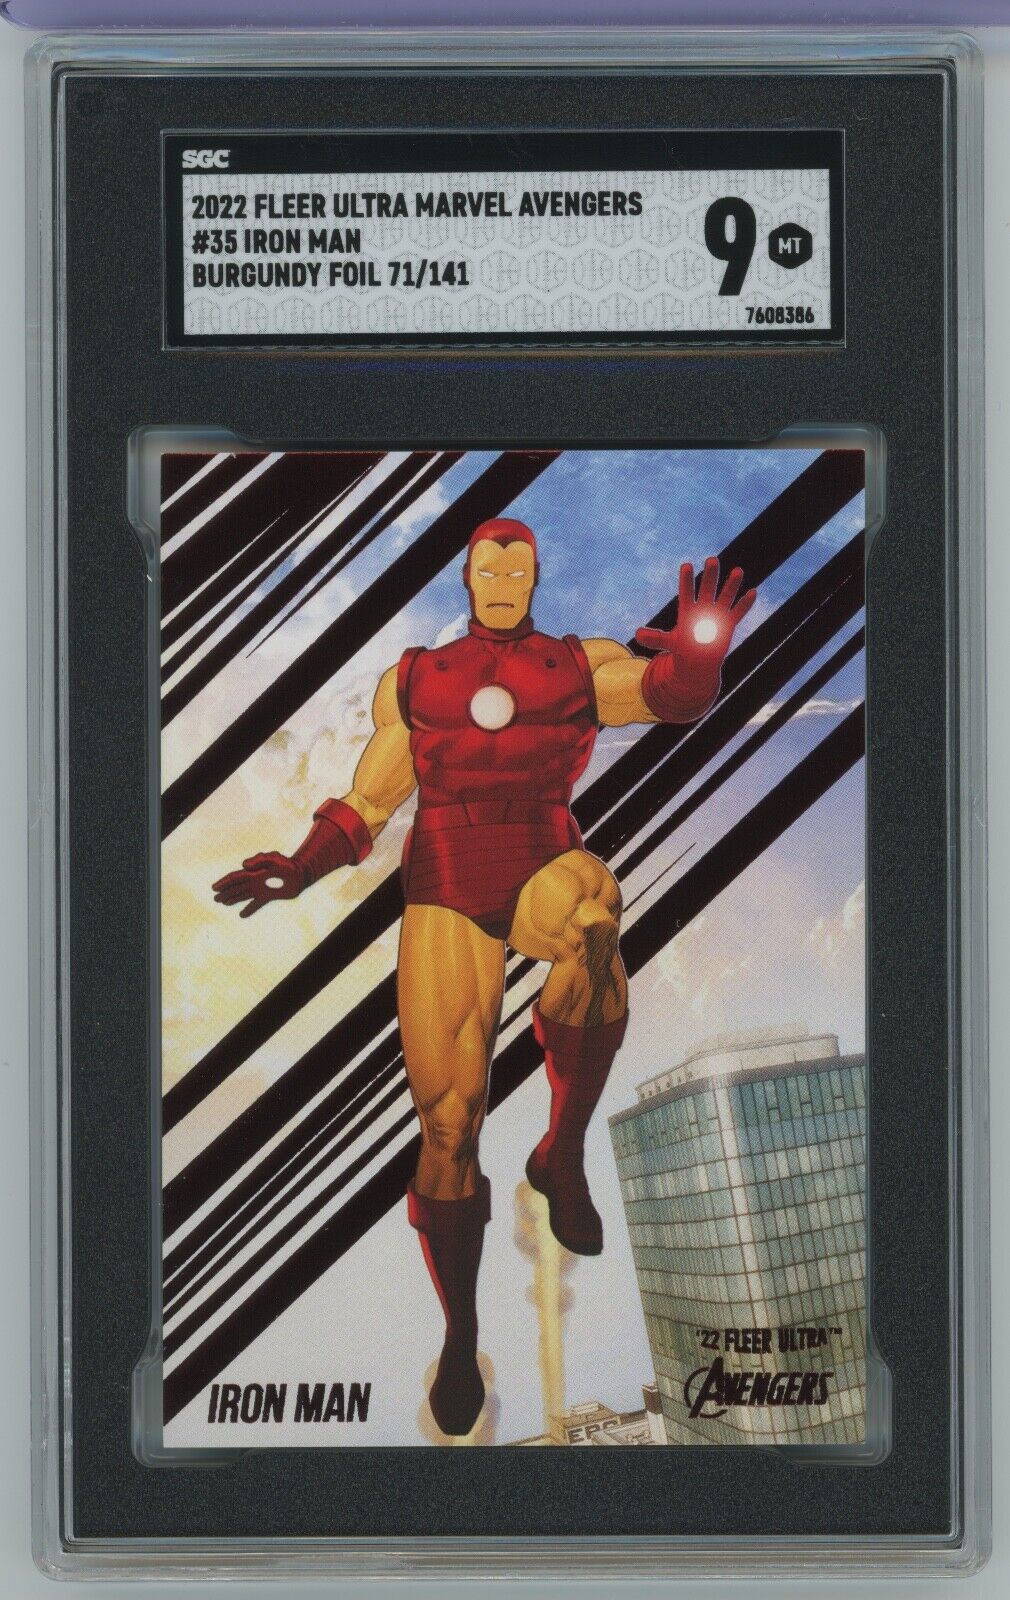 2022 Fleer Marvel Ultra Avengers Iron Man #35 Burgundy Foil /141 SGC 9 POP 1